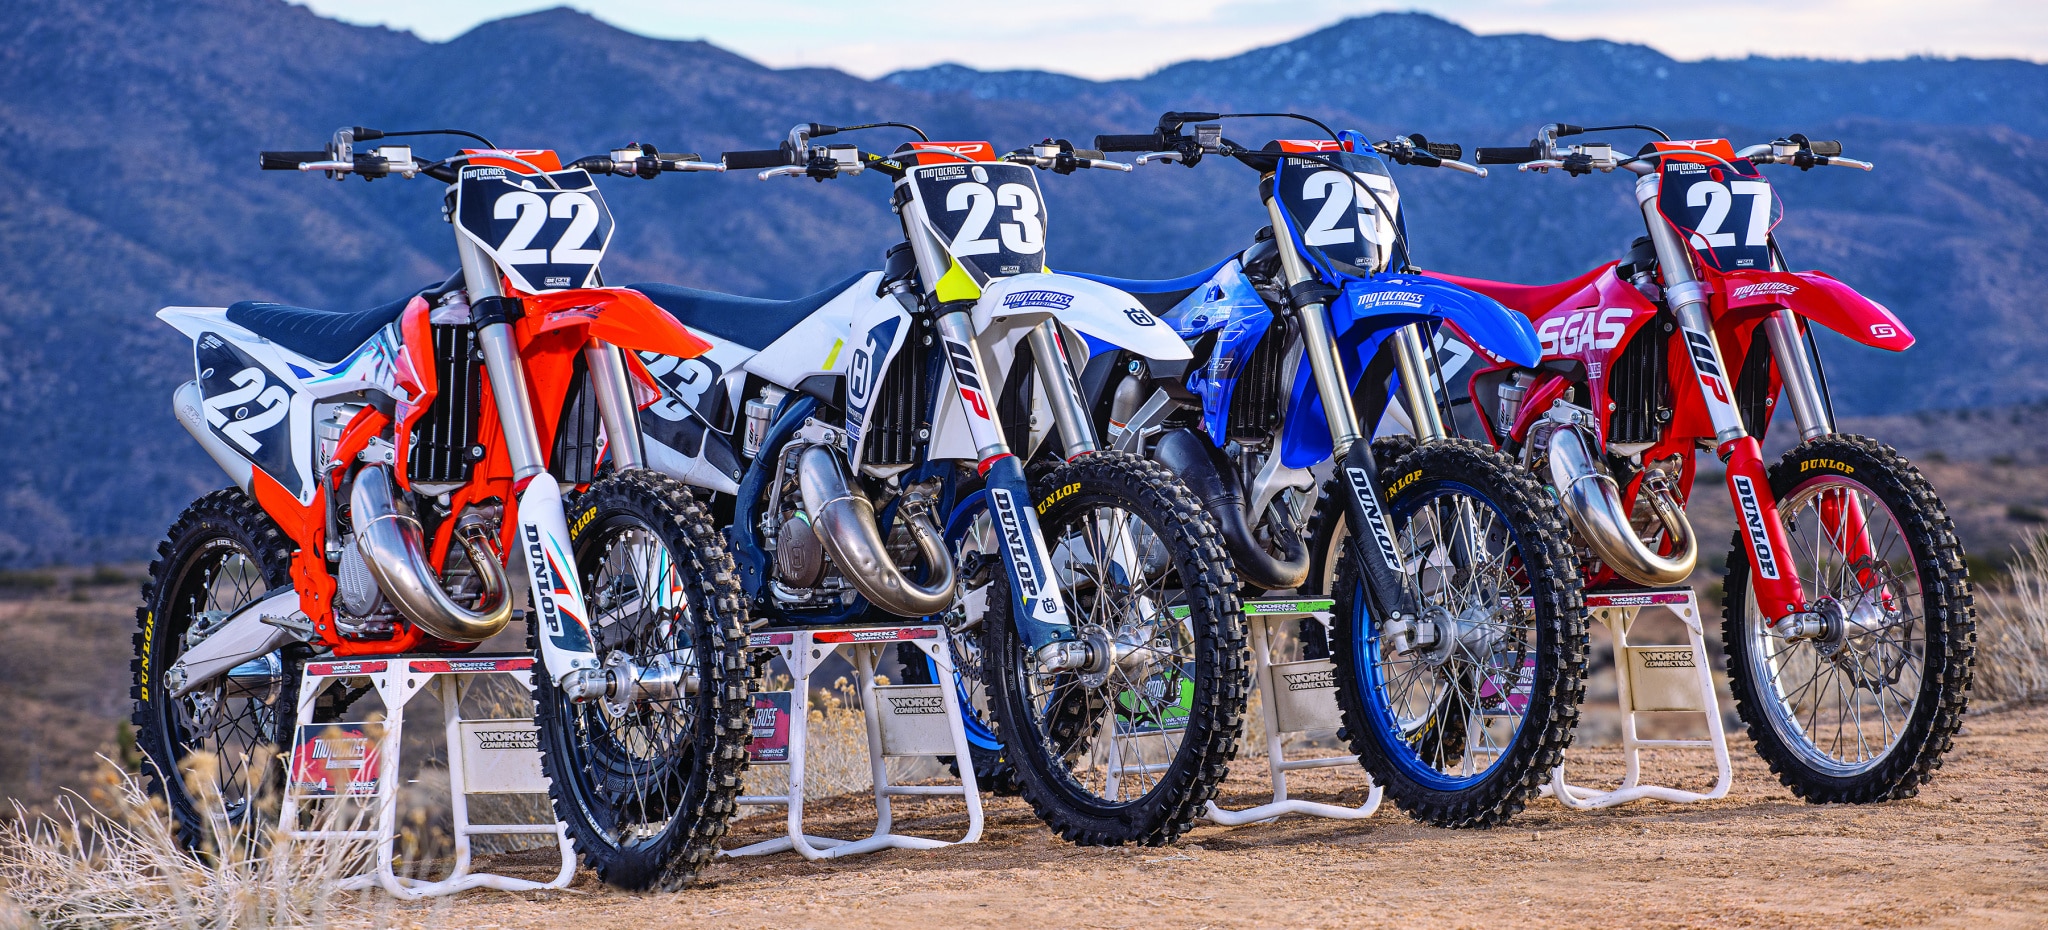 2022 Yamaha YZ125 Two Stroke TESTED - Motocross Action Magazine